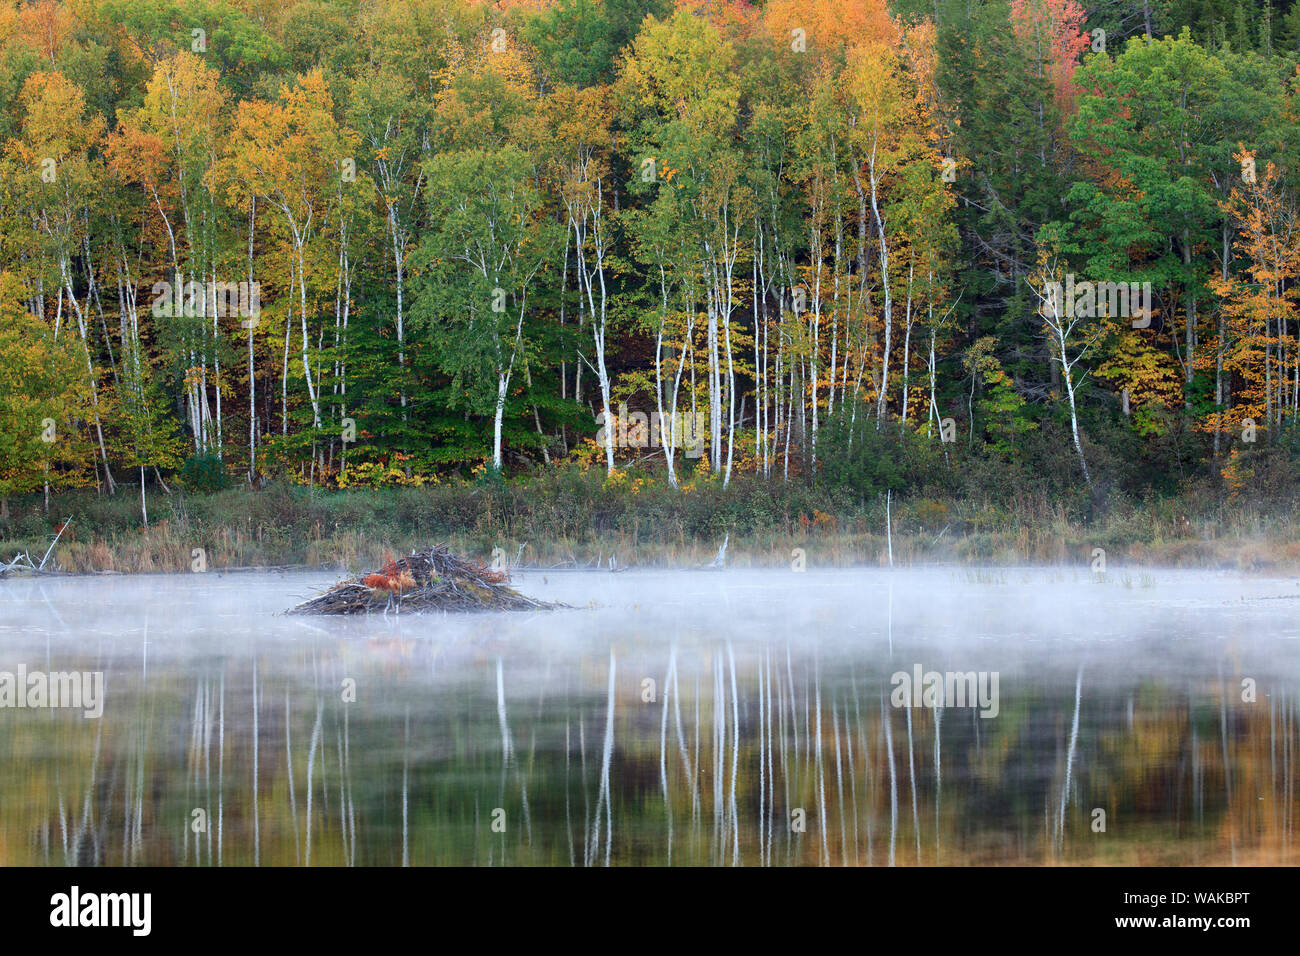 Aux Etats-Unis, dans le Maine. L'Acadia National Park, barrage de castor dans le brouillard à l'Étang du barrage de castors. Banque D'Images